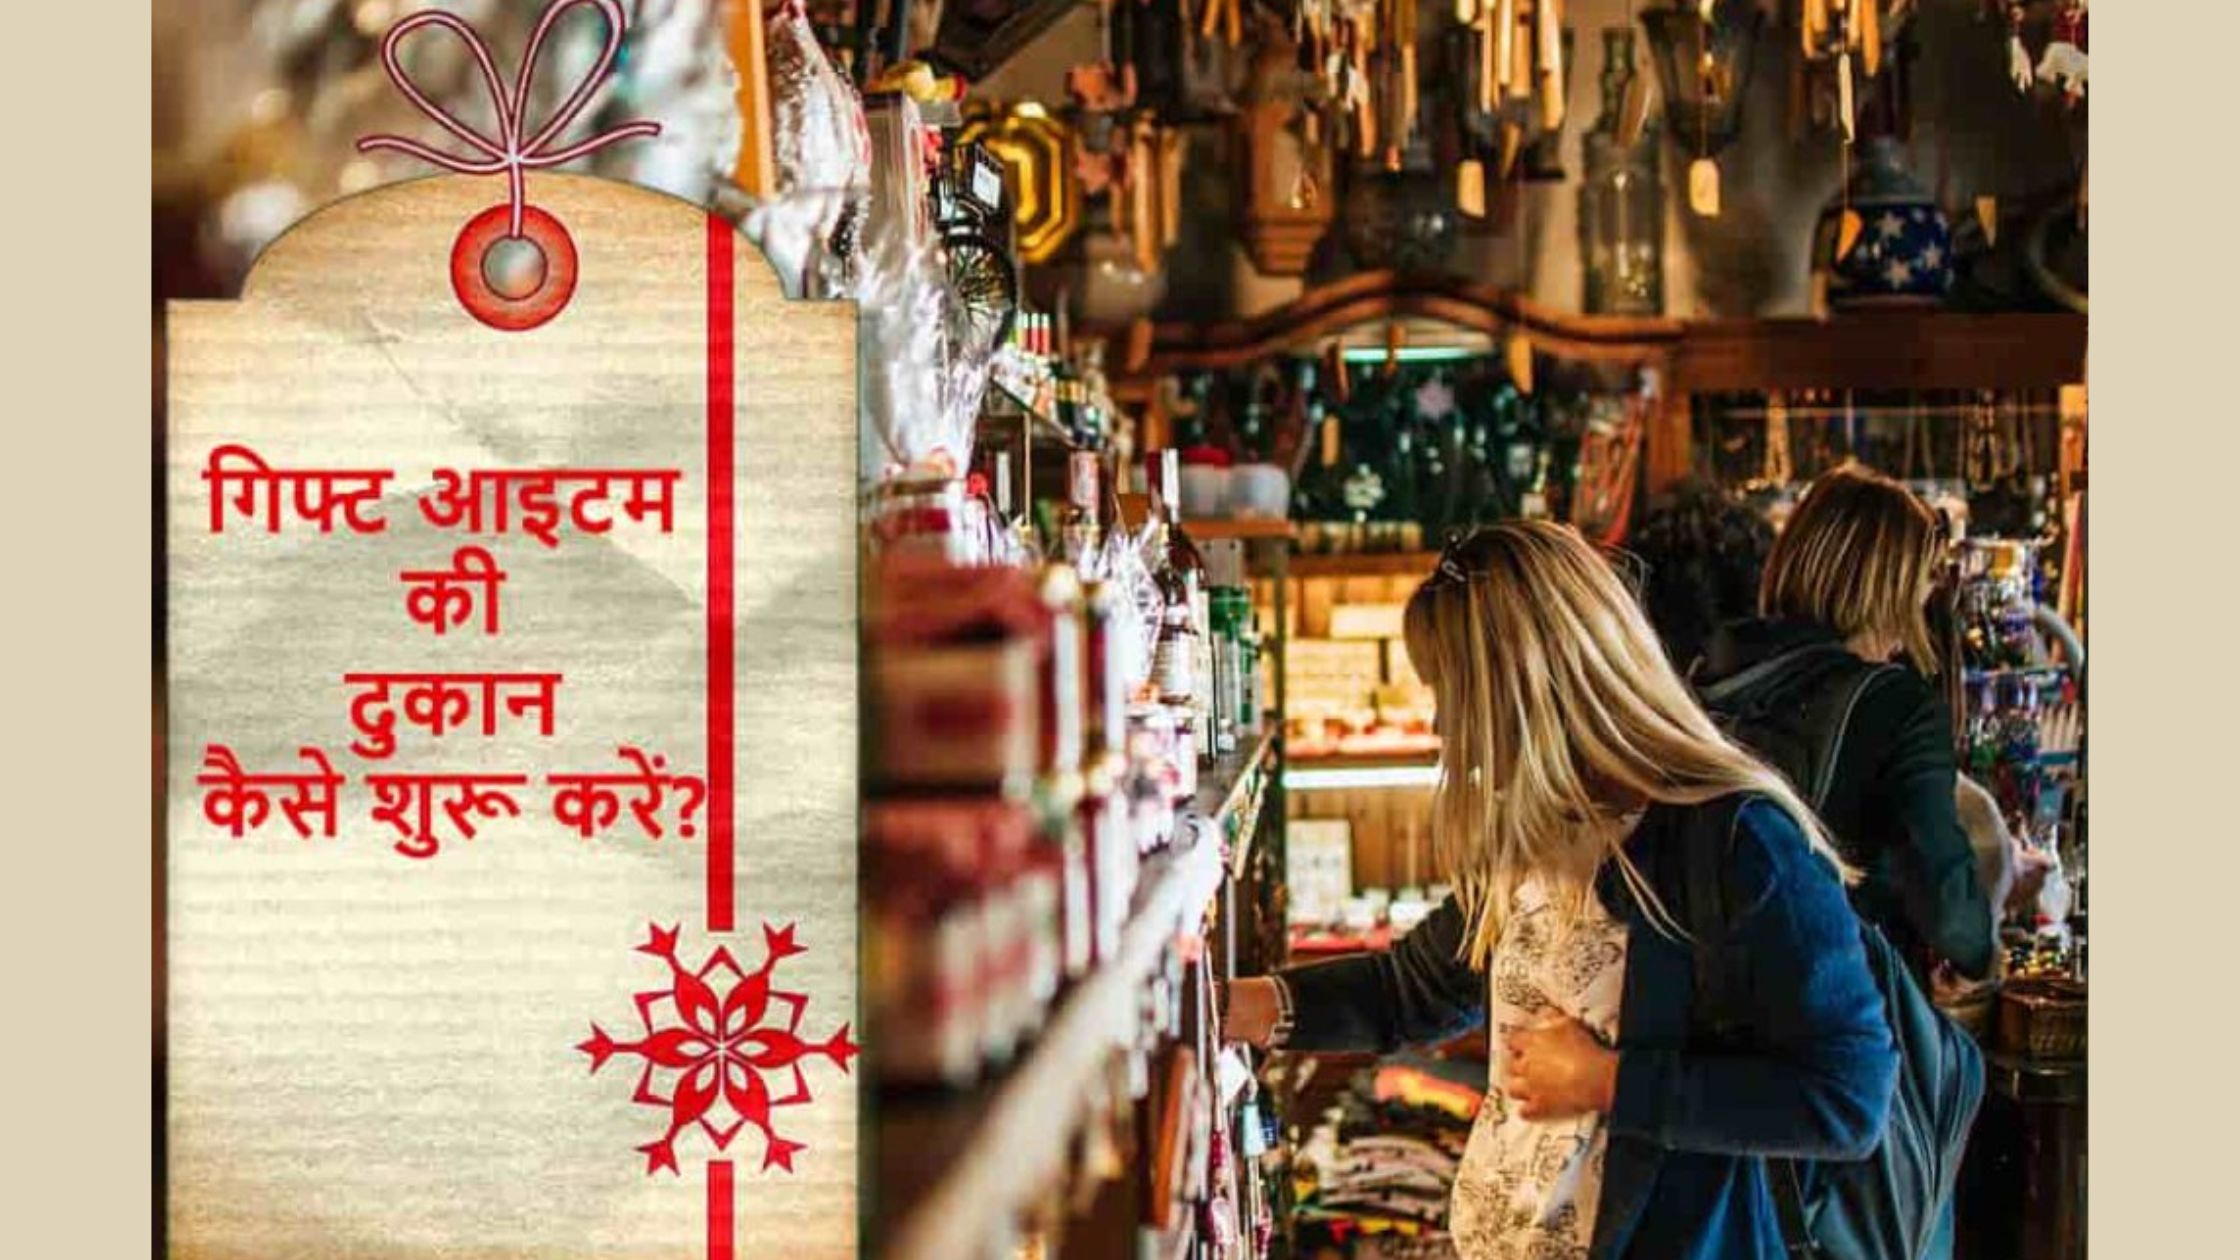 गिफ्ट की दुकान कैसे खोलें? यहां जानें | How to Start a Gift Shop Business in Hindi